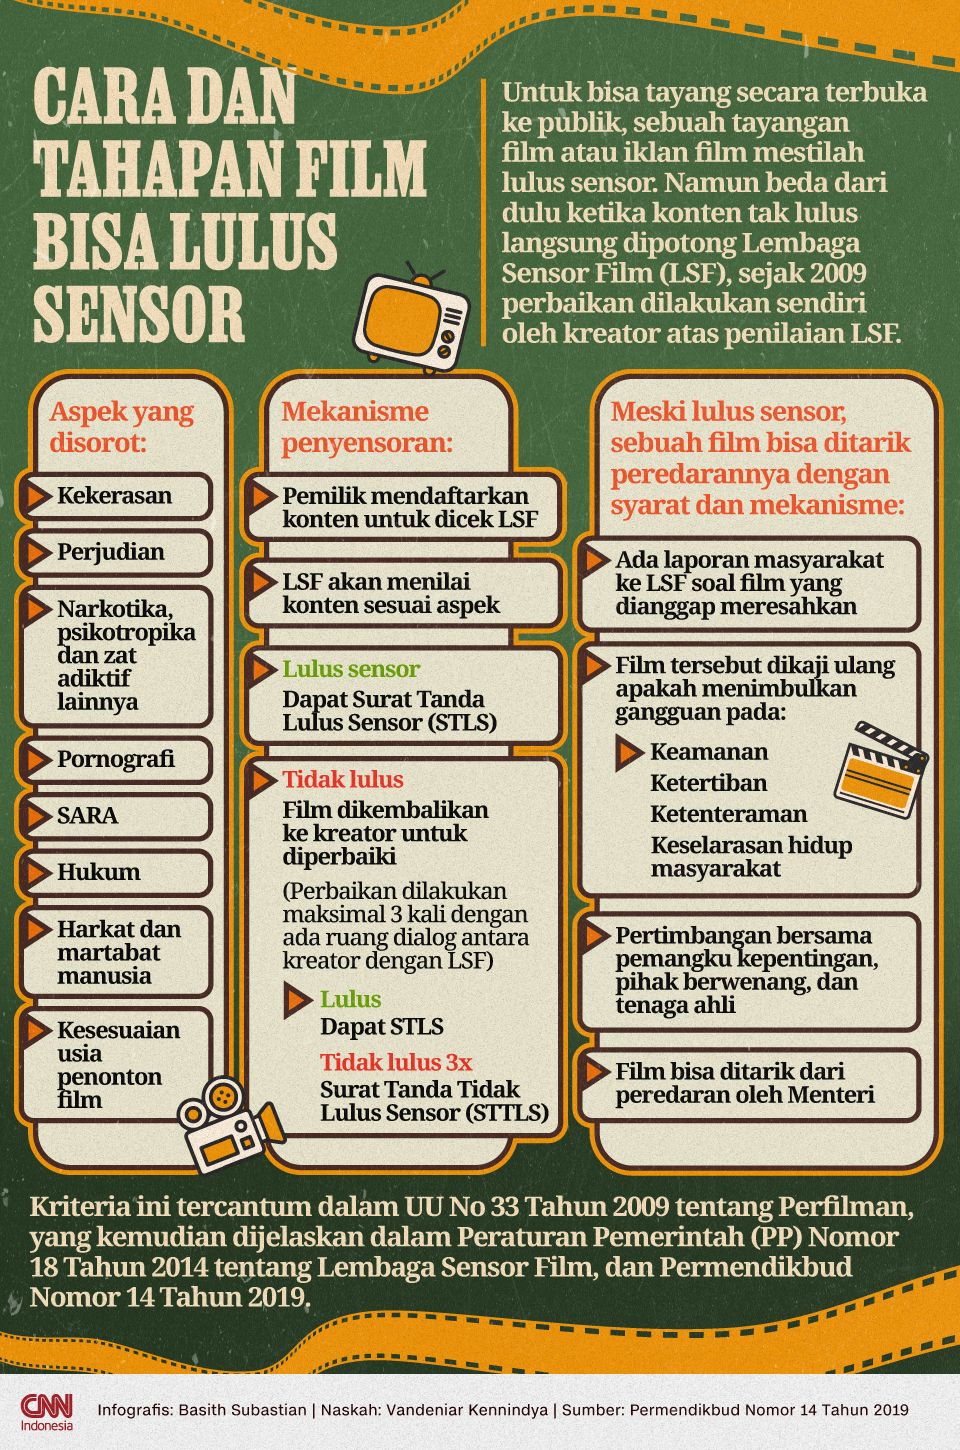 Infografis Cara dan Tahapan Film Bisa Lulus Sensor